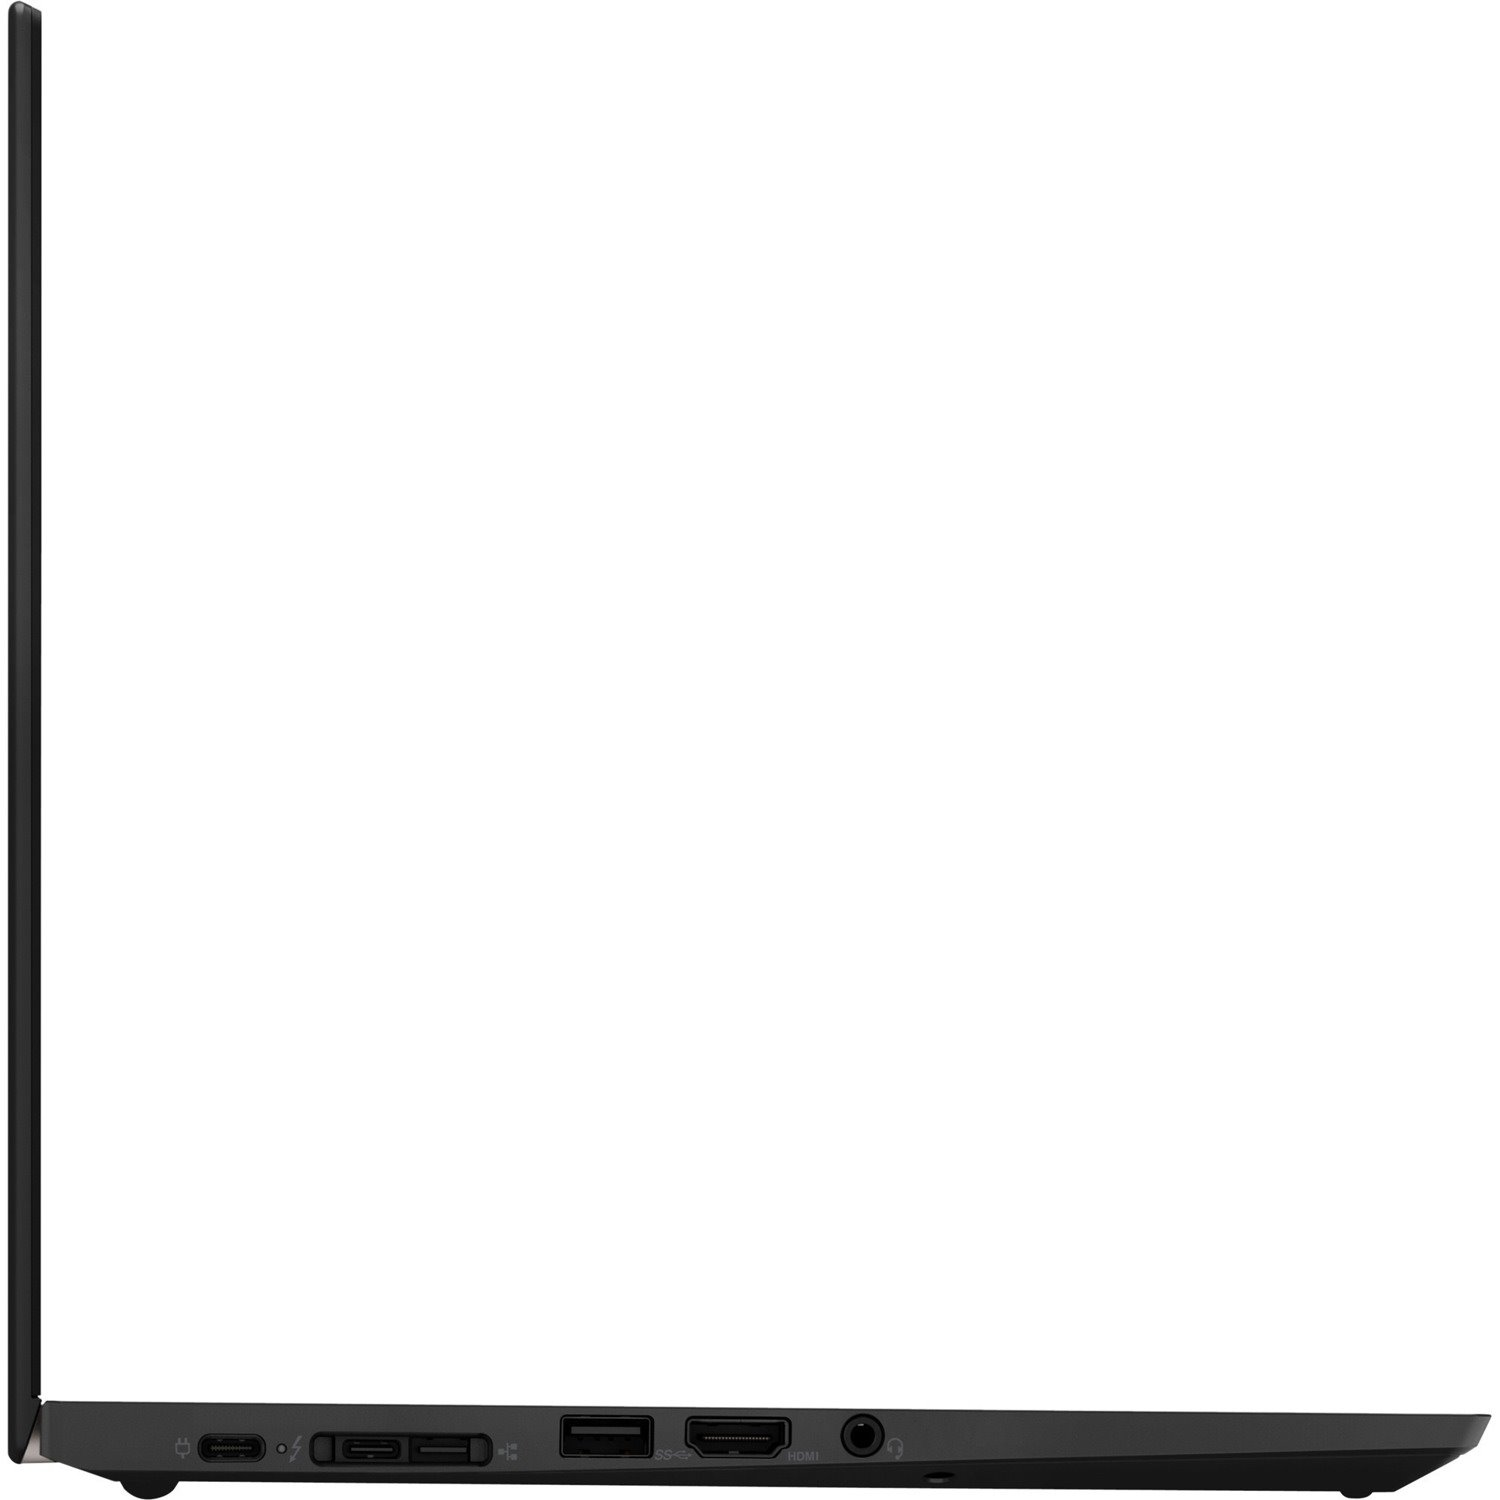 Lenovo ThinkPad X13 Gen 1 20T2002ACA 13.3" Notebook - Full HD - 1920 x 1080 - Intel Core i5 10th Gen i5-10210U Quad-core (4 Core) 1.60 GHz - 16 GB Total RAM - 256 GB SSD - Black